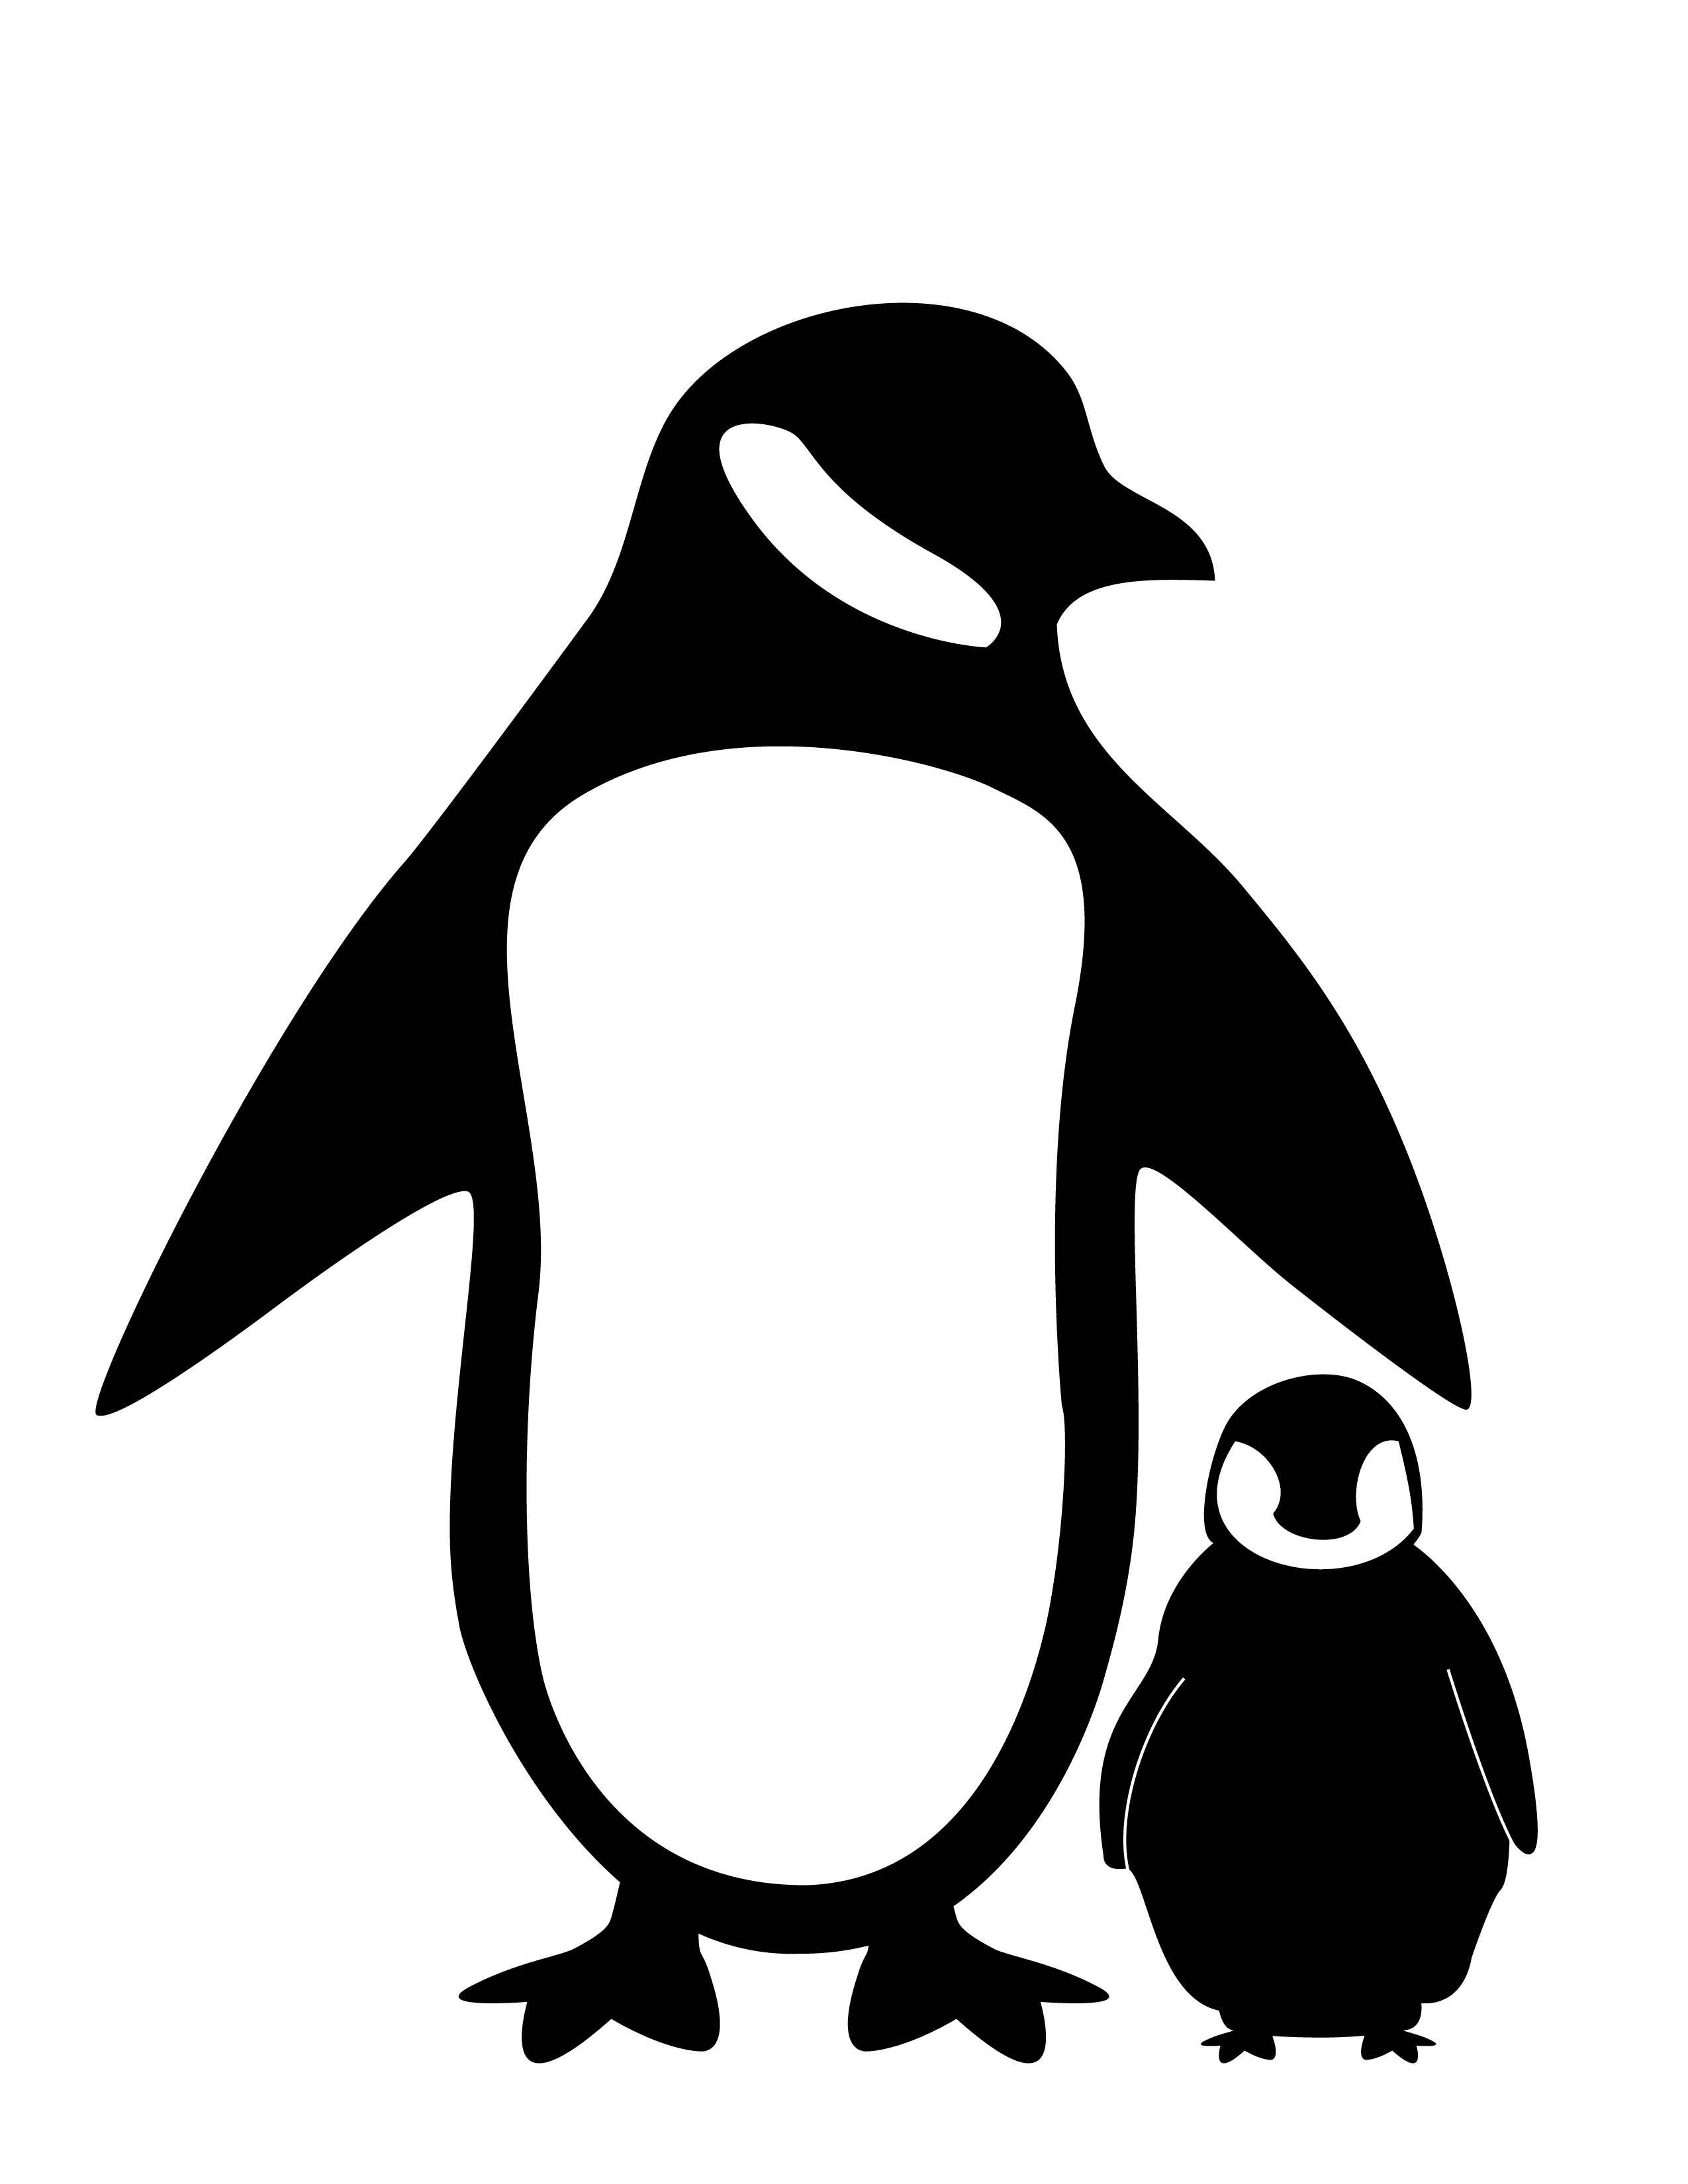 Black and White Penguins Logo - Penguin Silhouette Fc09 deviantart net black white penguin ...